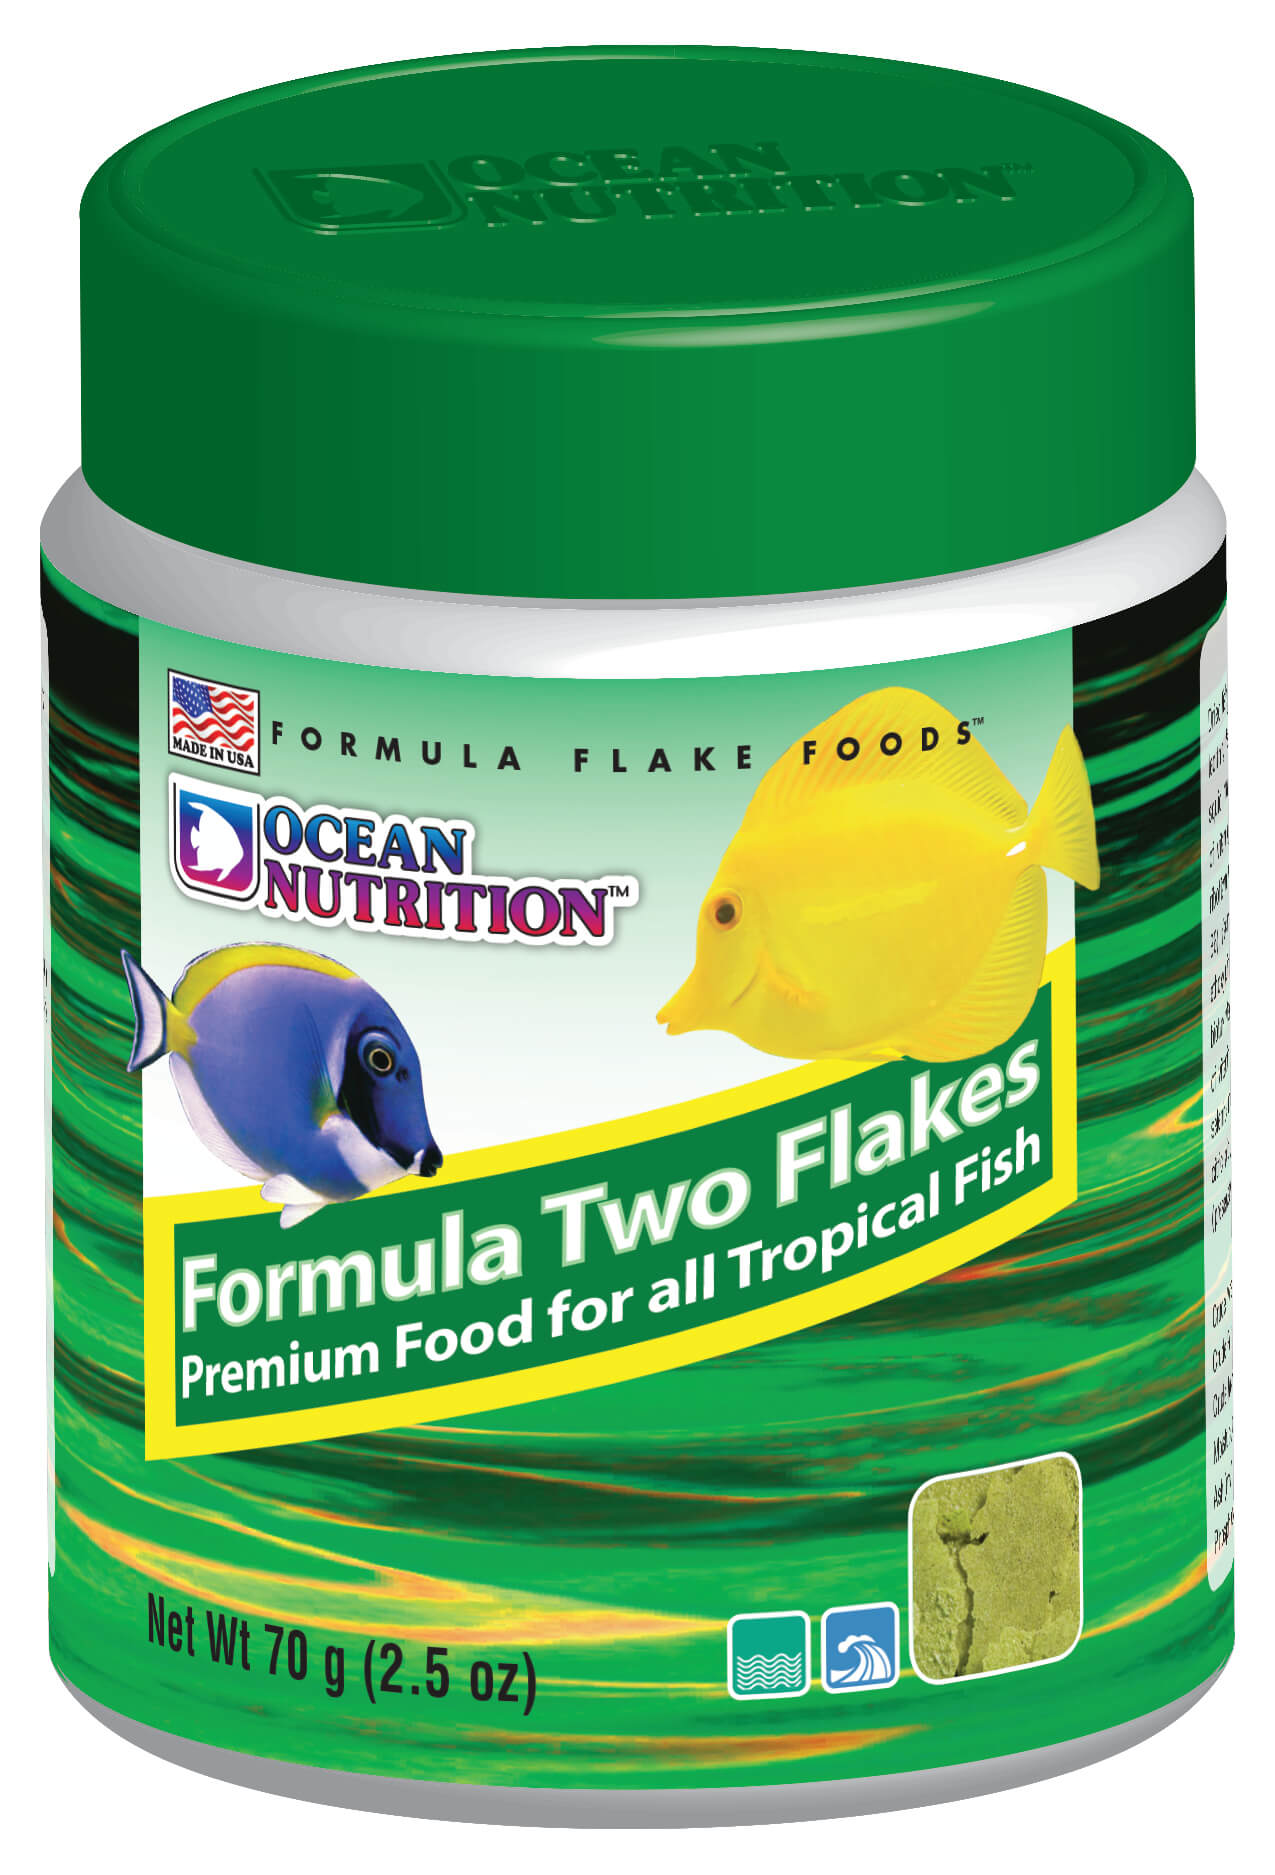 Ocean Nutrition Formula 2 Flake Food 2.5 oz